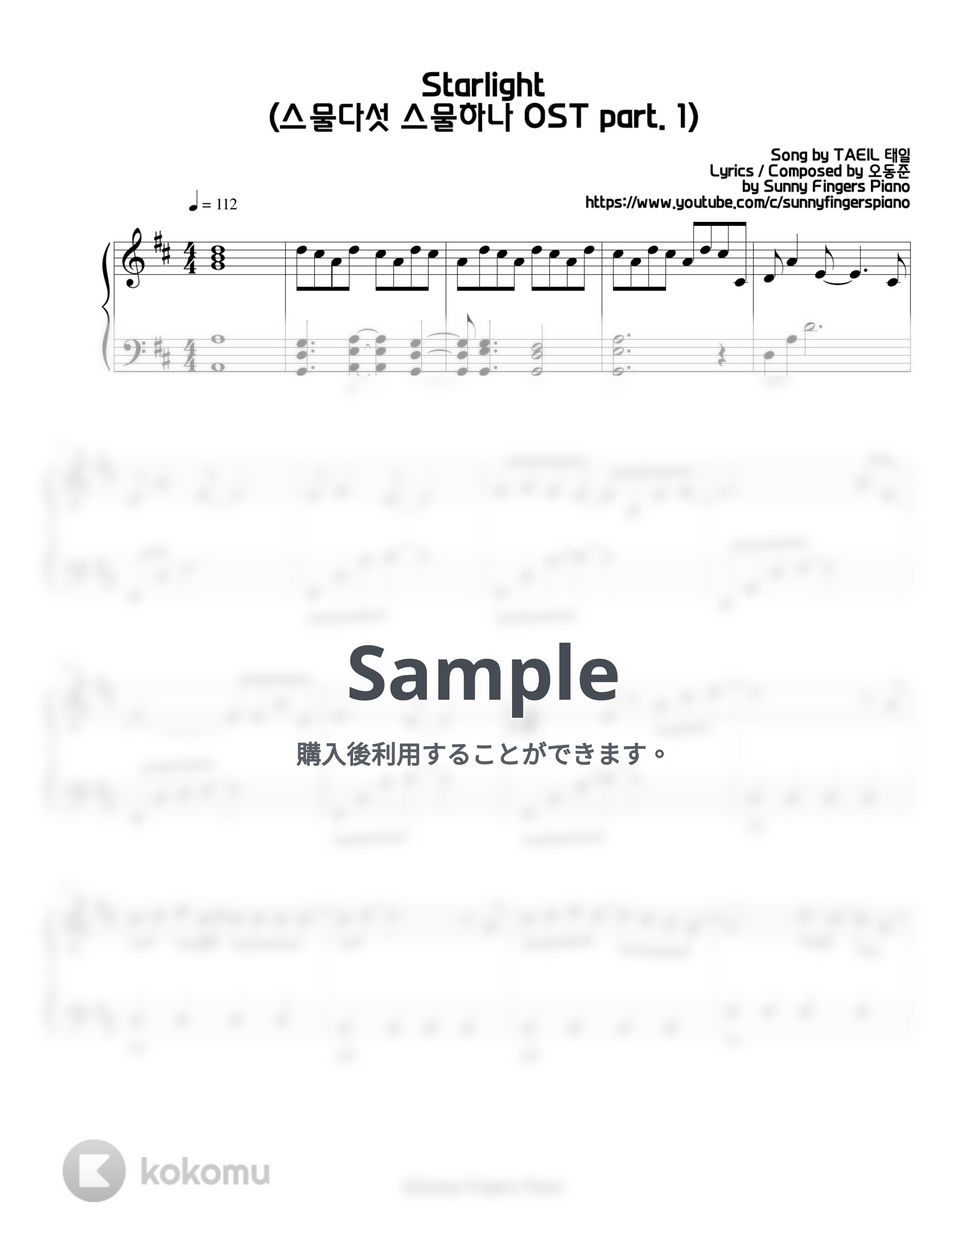 스물다섯 스물하나 twenty-five twenty-one - Starlight - TAEIL OST part. 1 by Sunny Fingers Piano